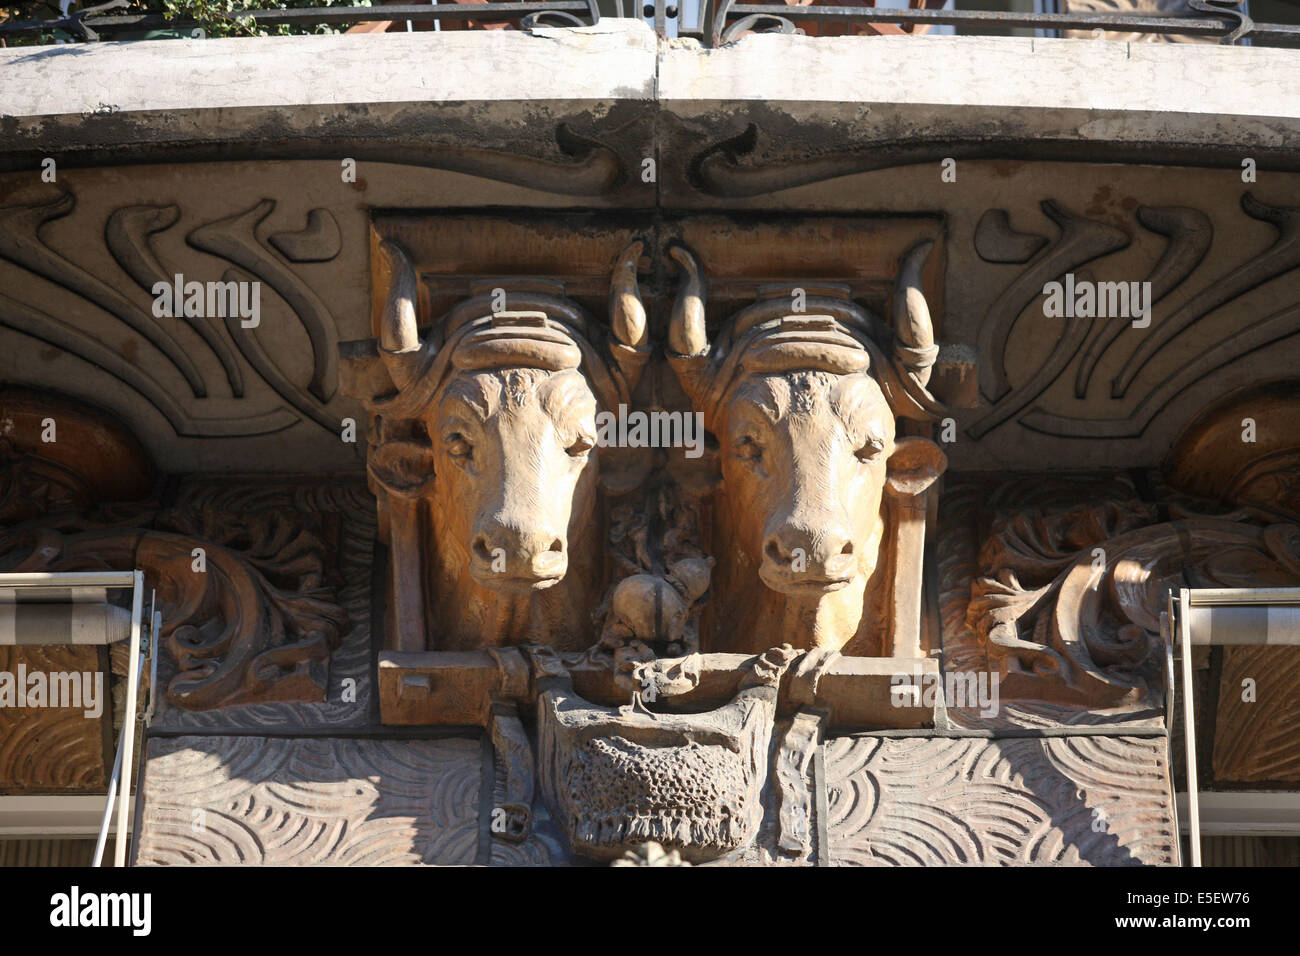 France, paris 7e, 29 avenue rapp, immeuble, architecte jules lavirotte, ceramiques d'alexandre bigot, Stock Photo